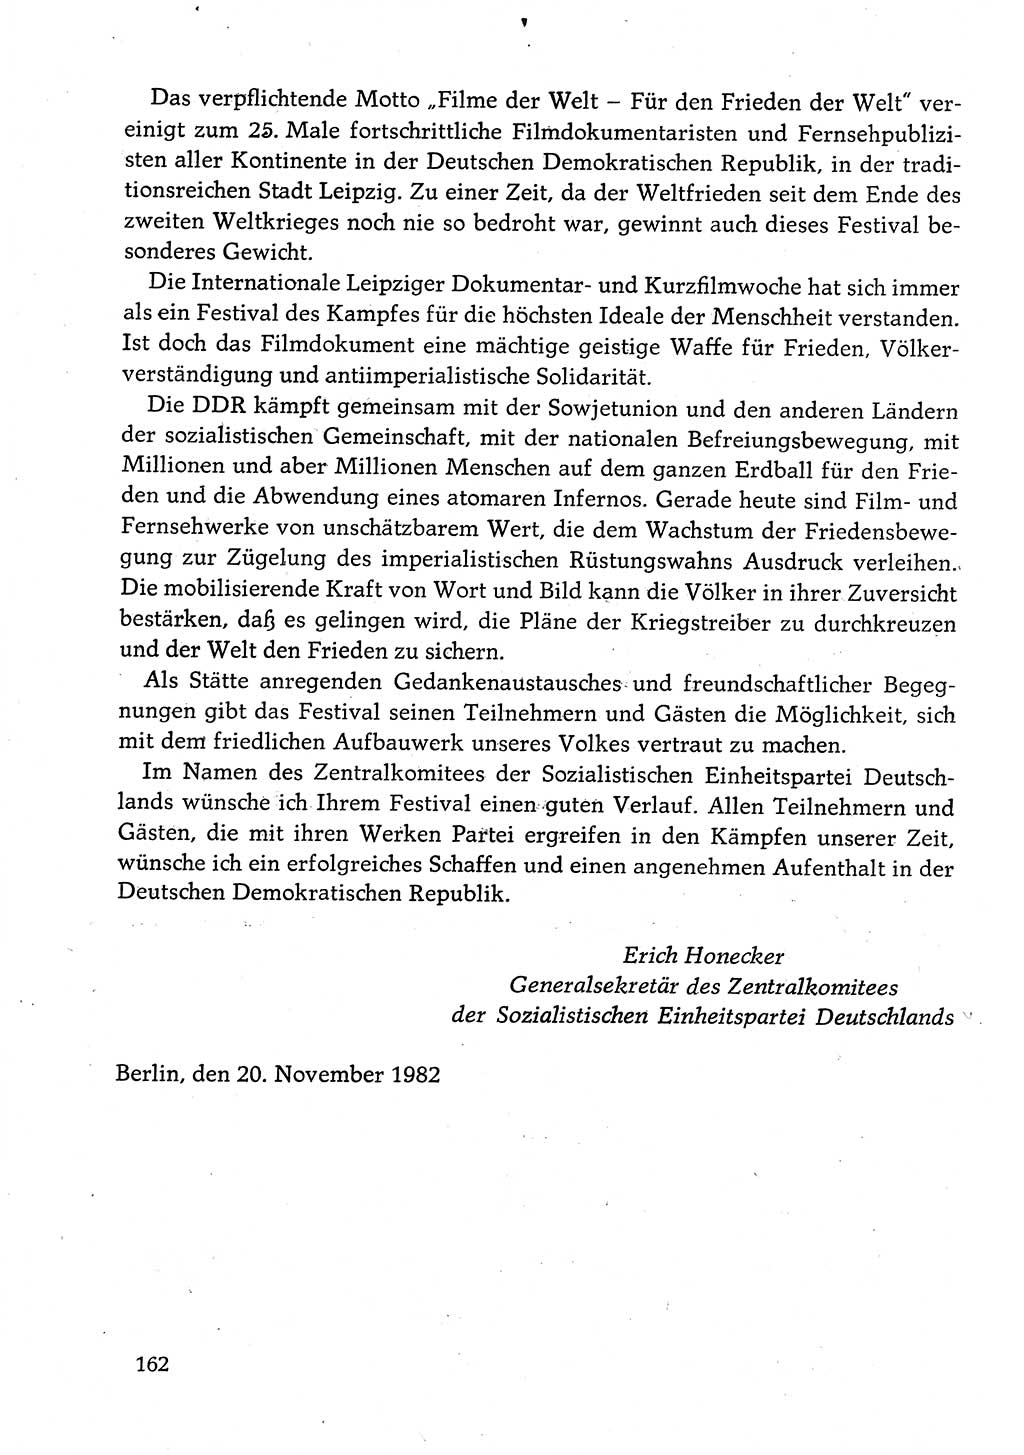 Dokumente der Sozialistischen Einheitspartei Deutschlands (SED) [Deutsche Demokratische Republik (DDR)] 1982-1983, Seite 162 (Dok. SED DDR 1982-1983, S. 162)